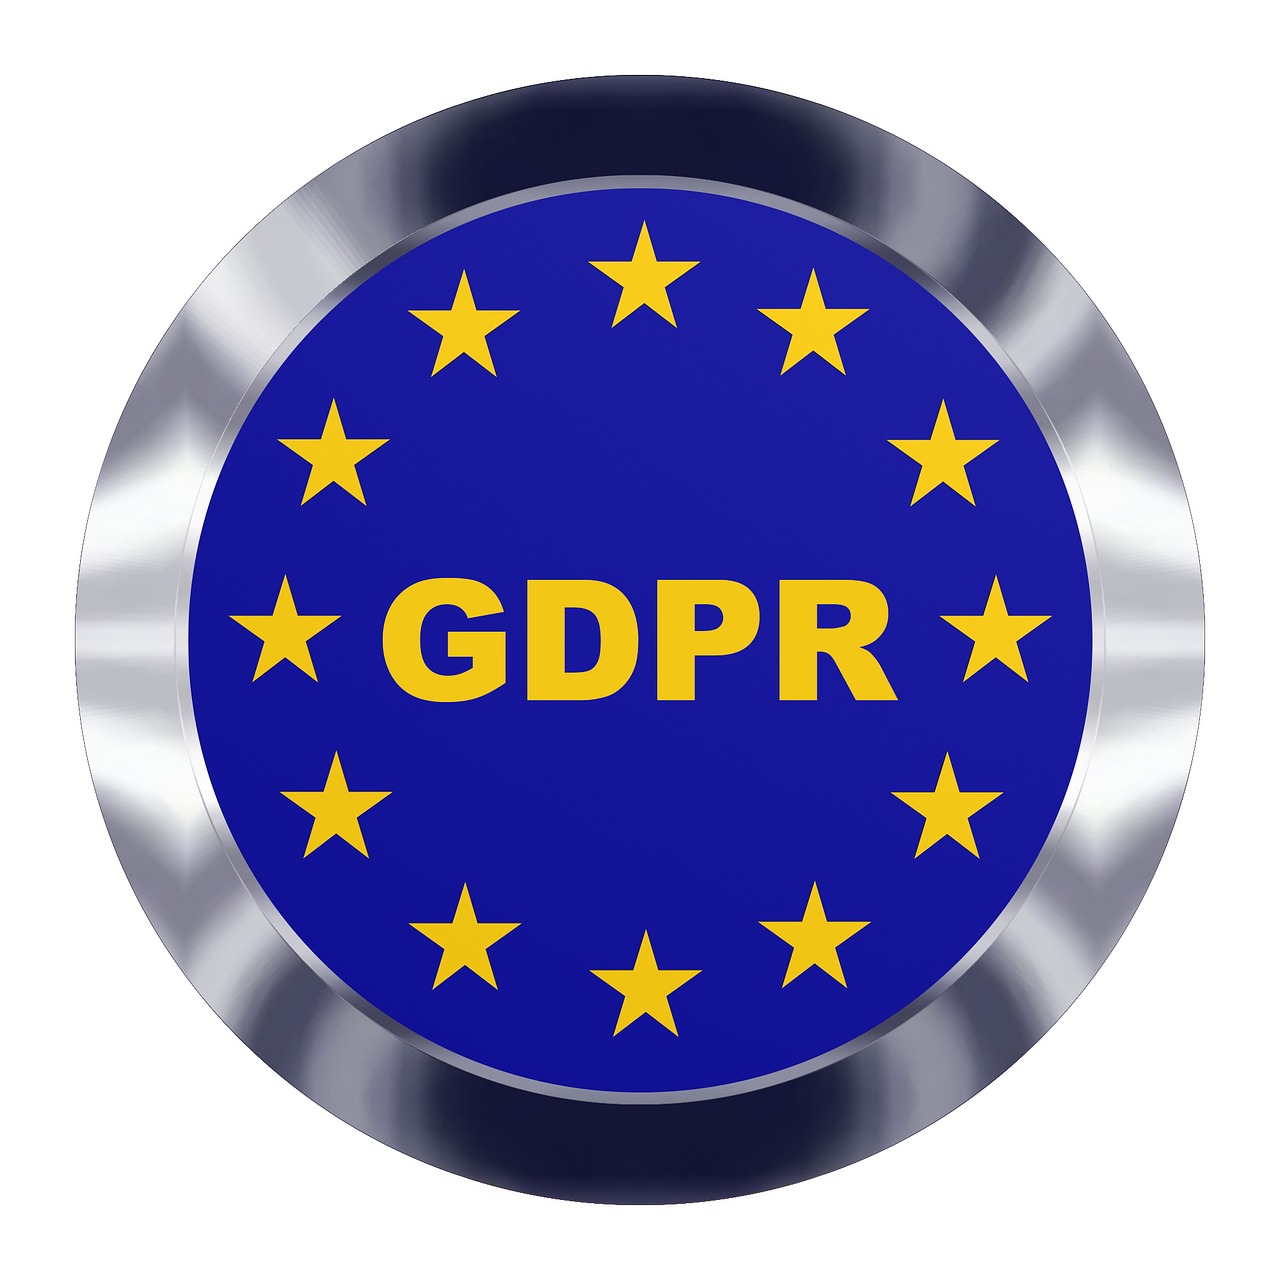 Europa,  Gdpr,  Duomenys,  Privatumas,  Technologija,  Reguliavimas,  Teisė,  Apsauga,  Europietis,  Apskritai